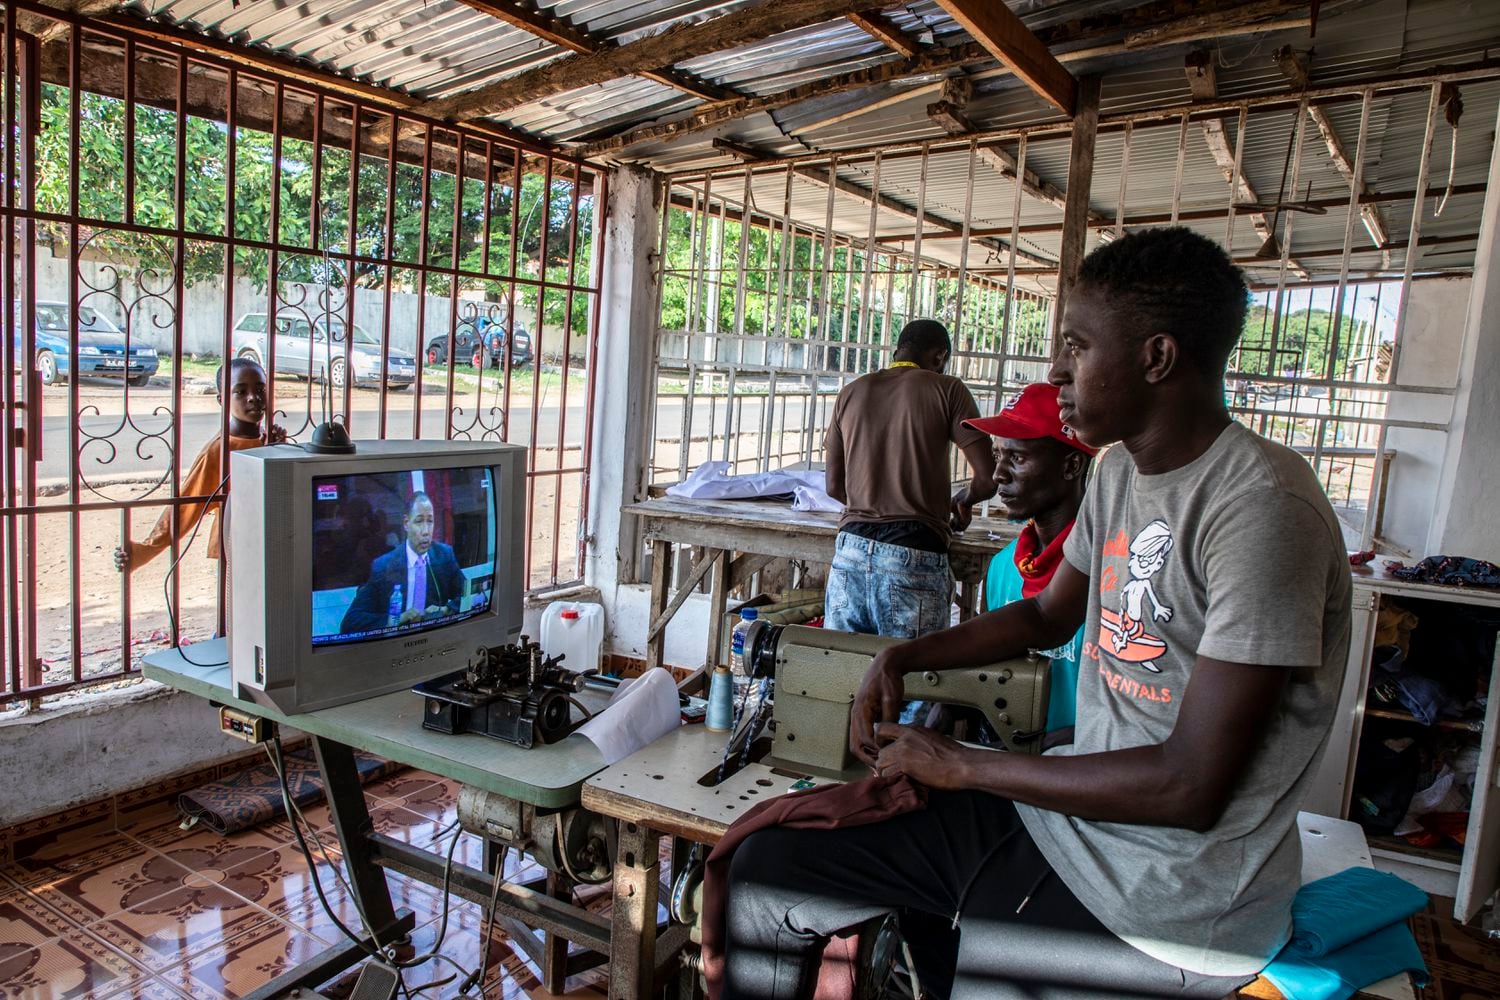 Las sesiones de la Comisión de la Verdad, la Reconciliación y las Reparaciones se retransmiten en directo por televisión y son seguidas cada día por decenas de miles de gambianos que escuchan entre el asombro y la indignación los relatos de víctimas y verdugos.